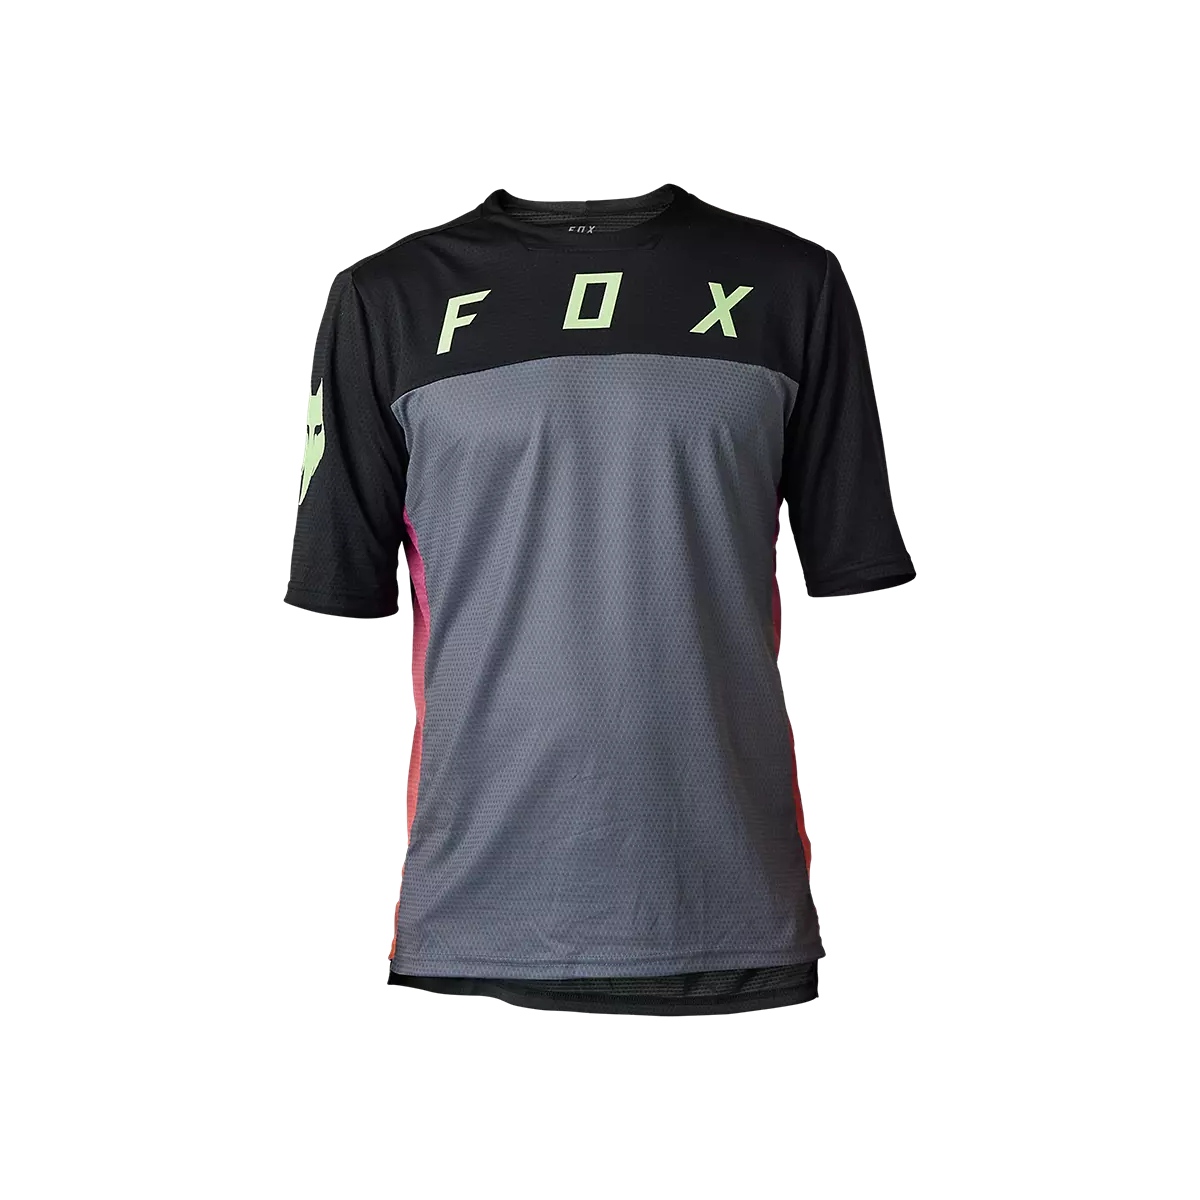 Camiseta técnica de manga corta Fox Defend SS CEKT PARA Mtb enduro o ebike | color negro gris | 31029-001